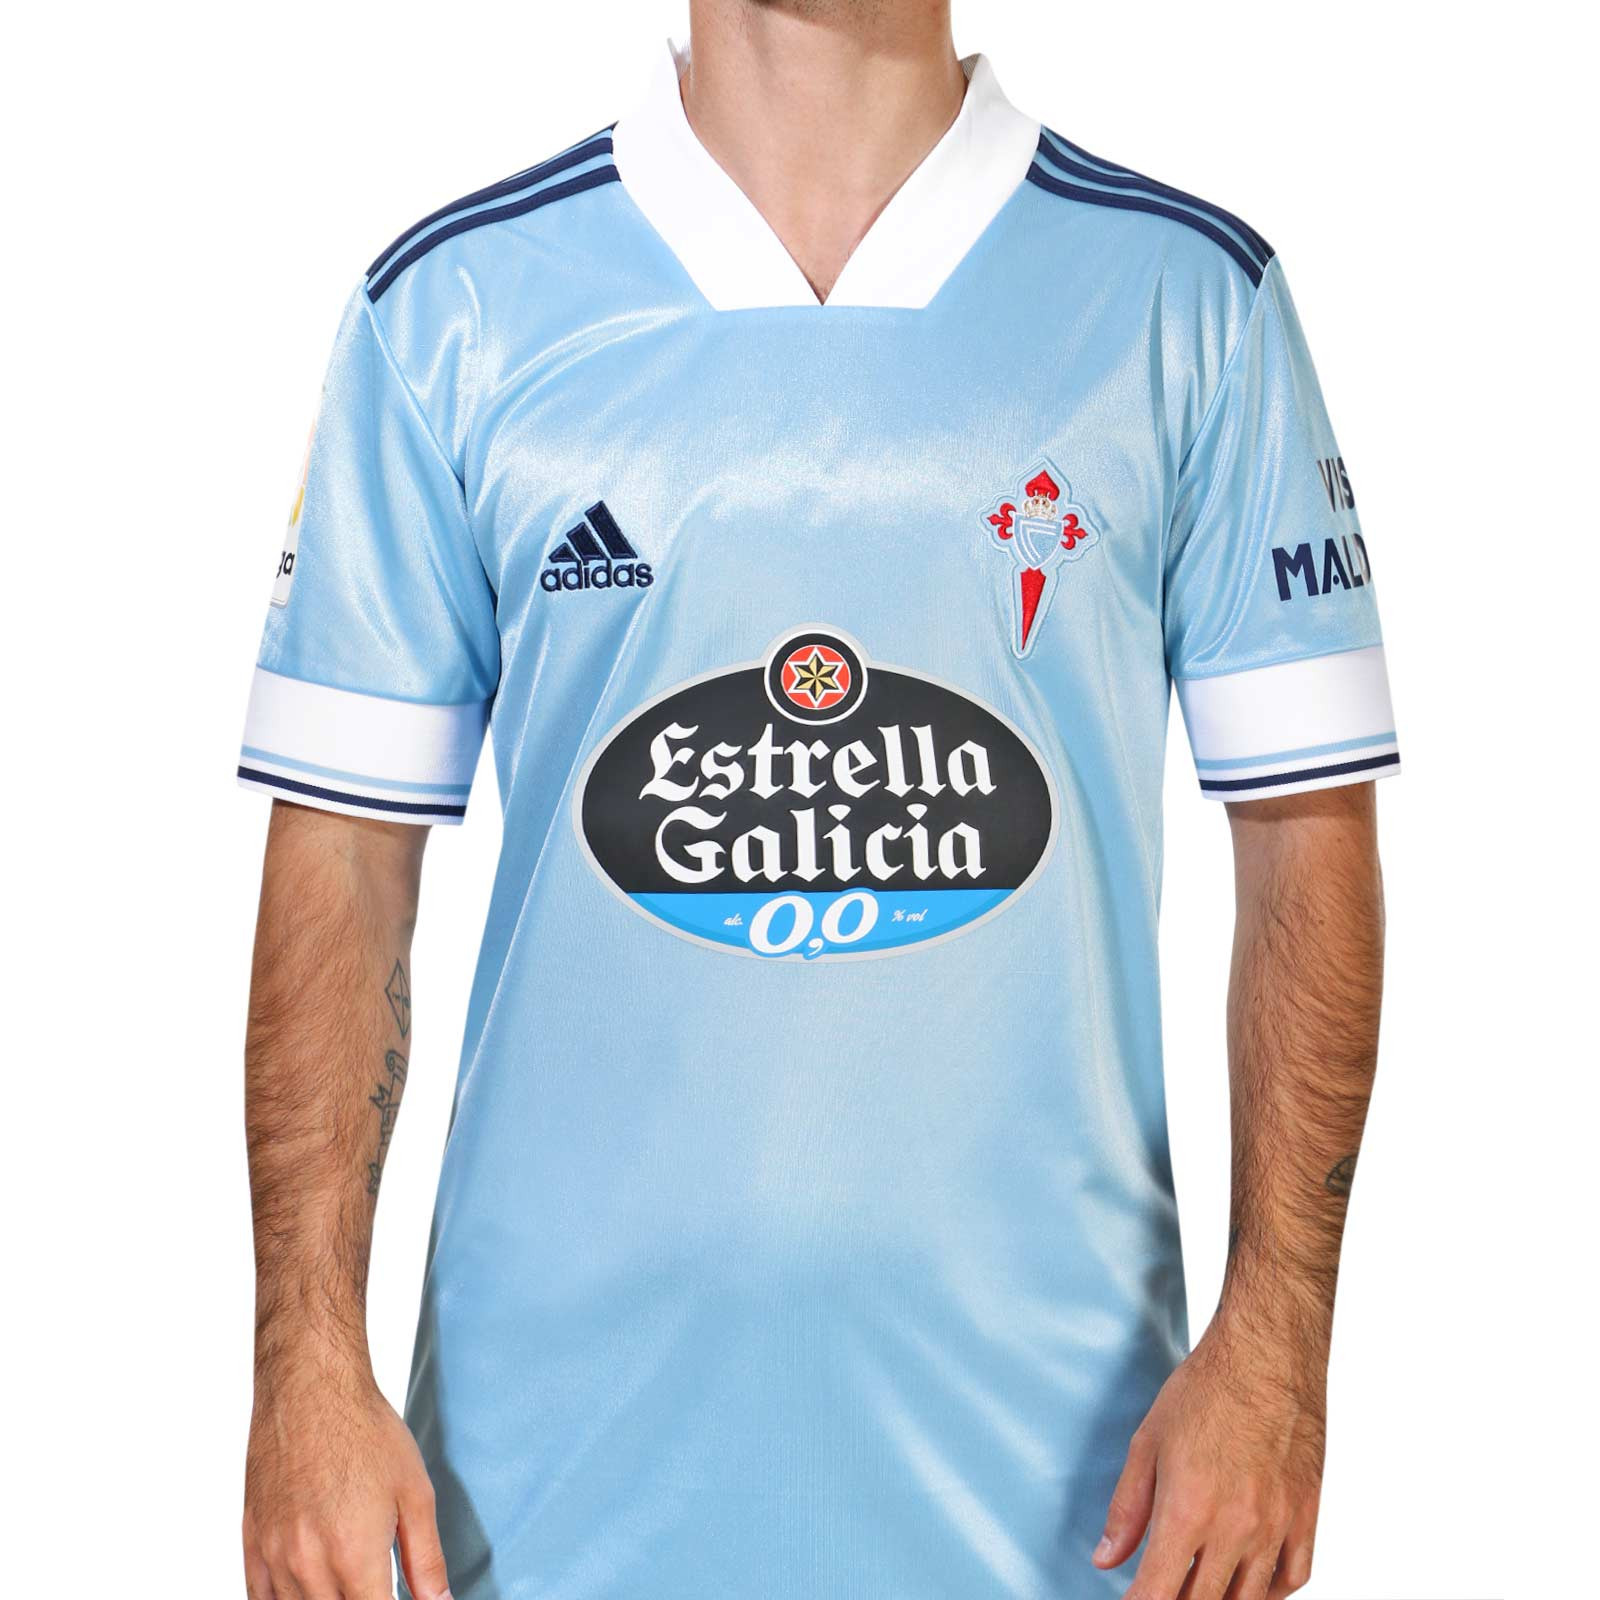 Retirada confiar Ingenieria Camiseta adidas Celta de Vigo 2020 2021 | futbolmania